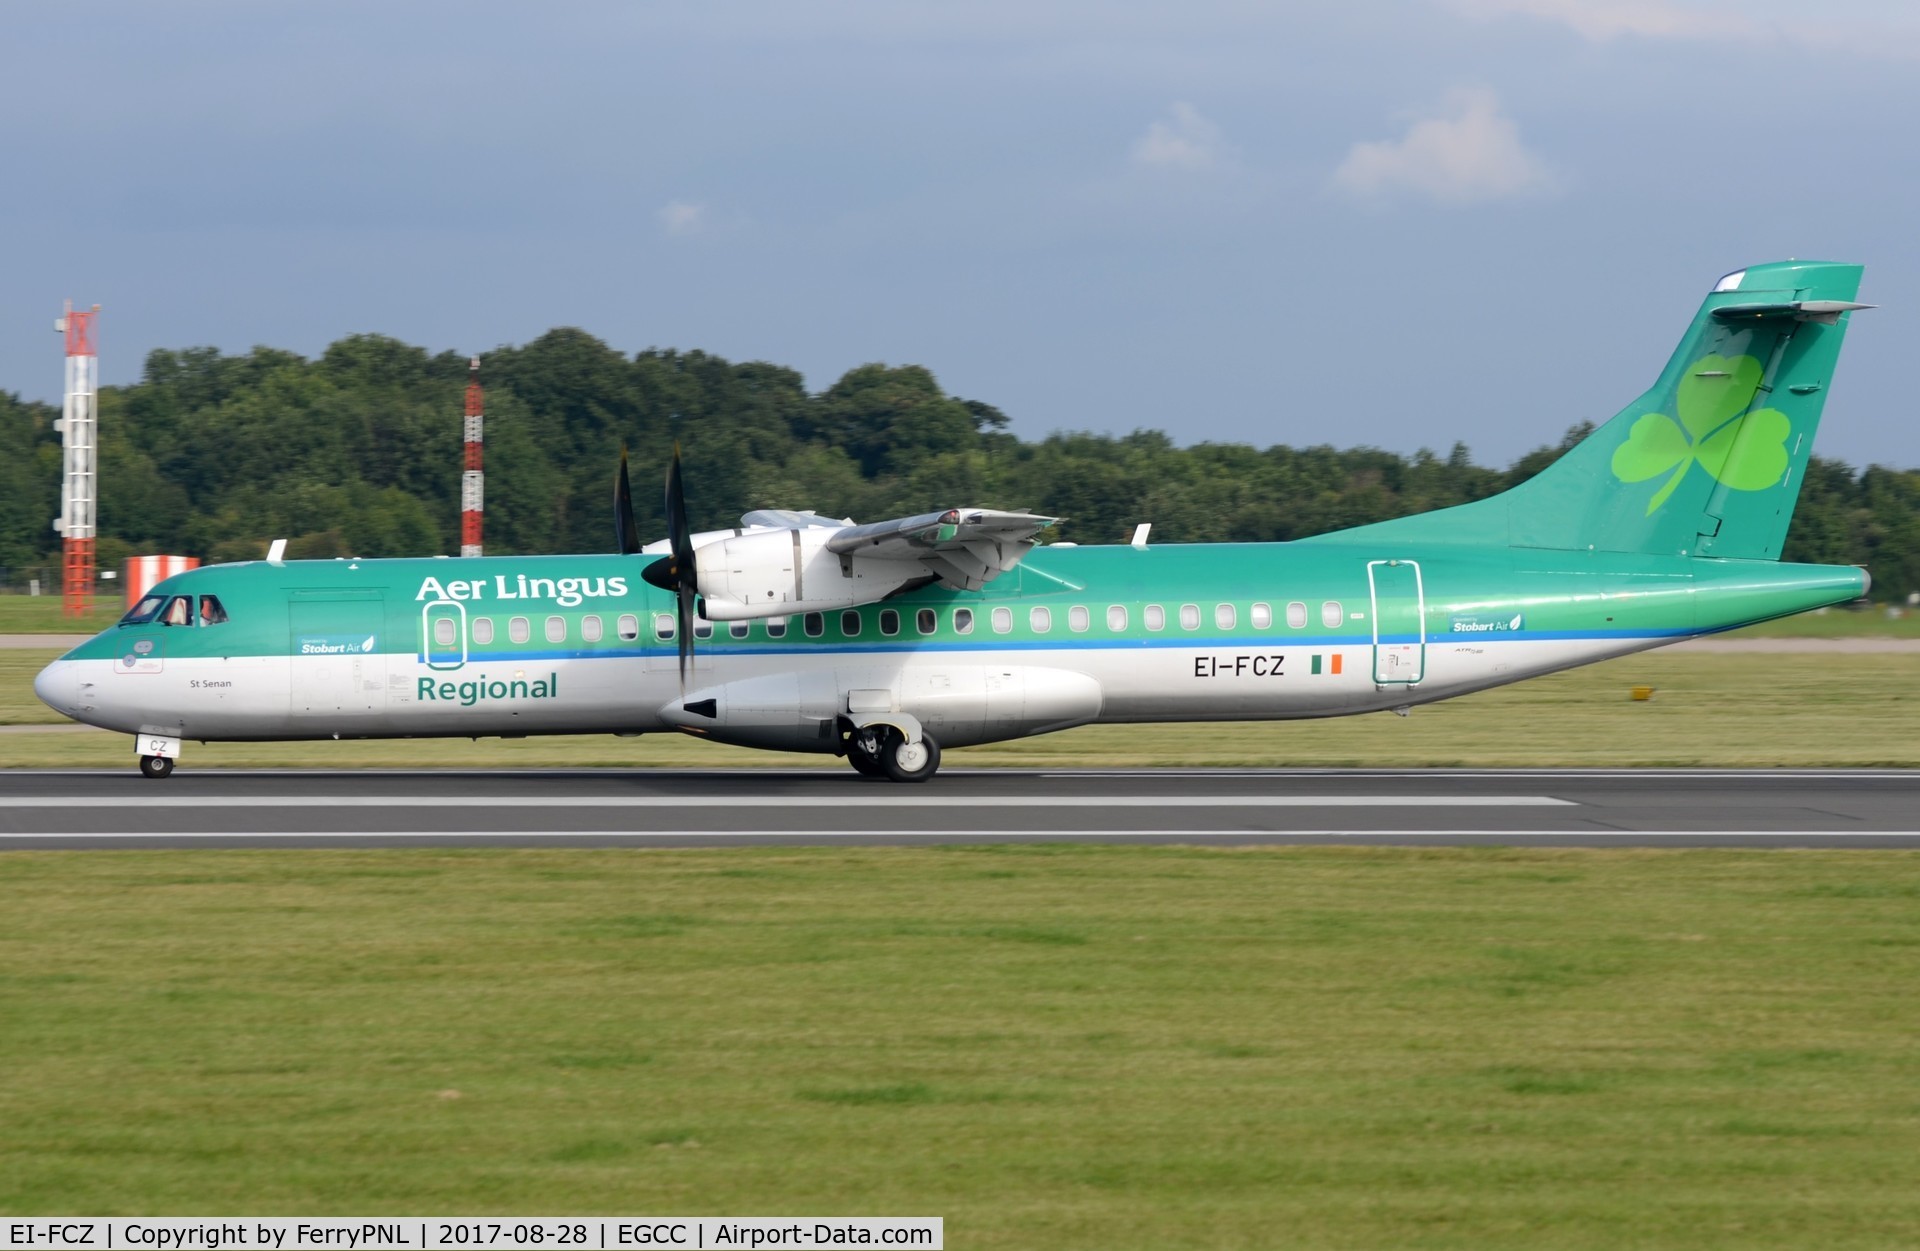 EI-FCZ, 2014 ATR 72-600 (72-212A) C/N 1159, Aer Lingus Regional ATR772 lined-up.